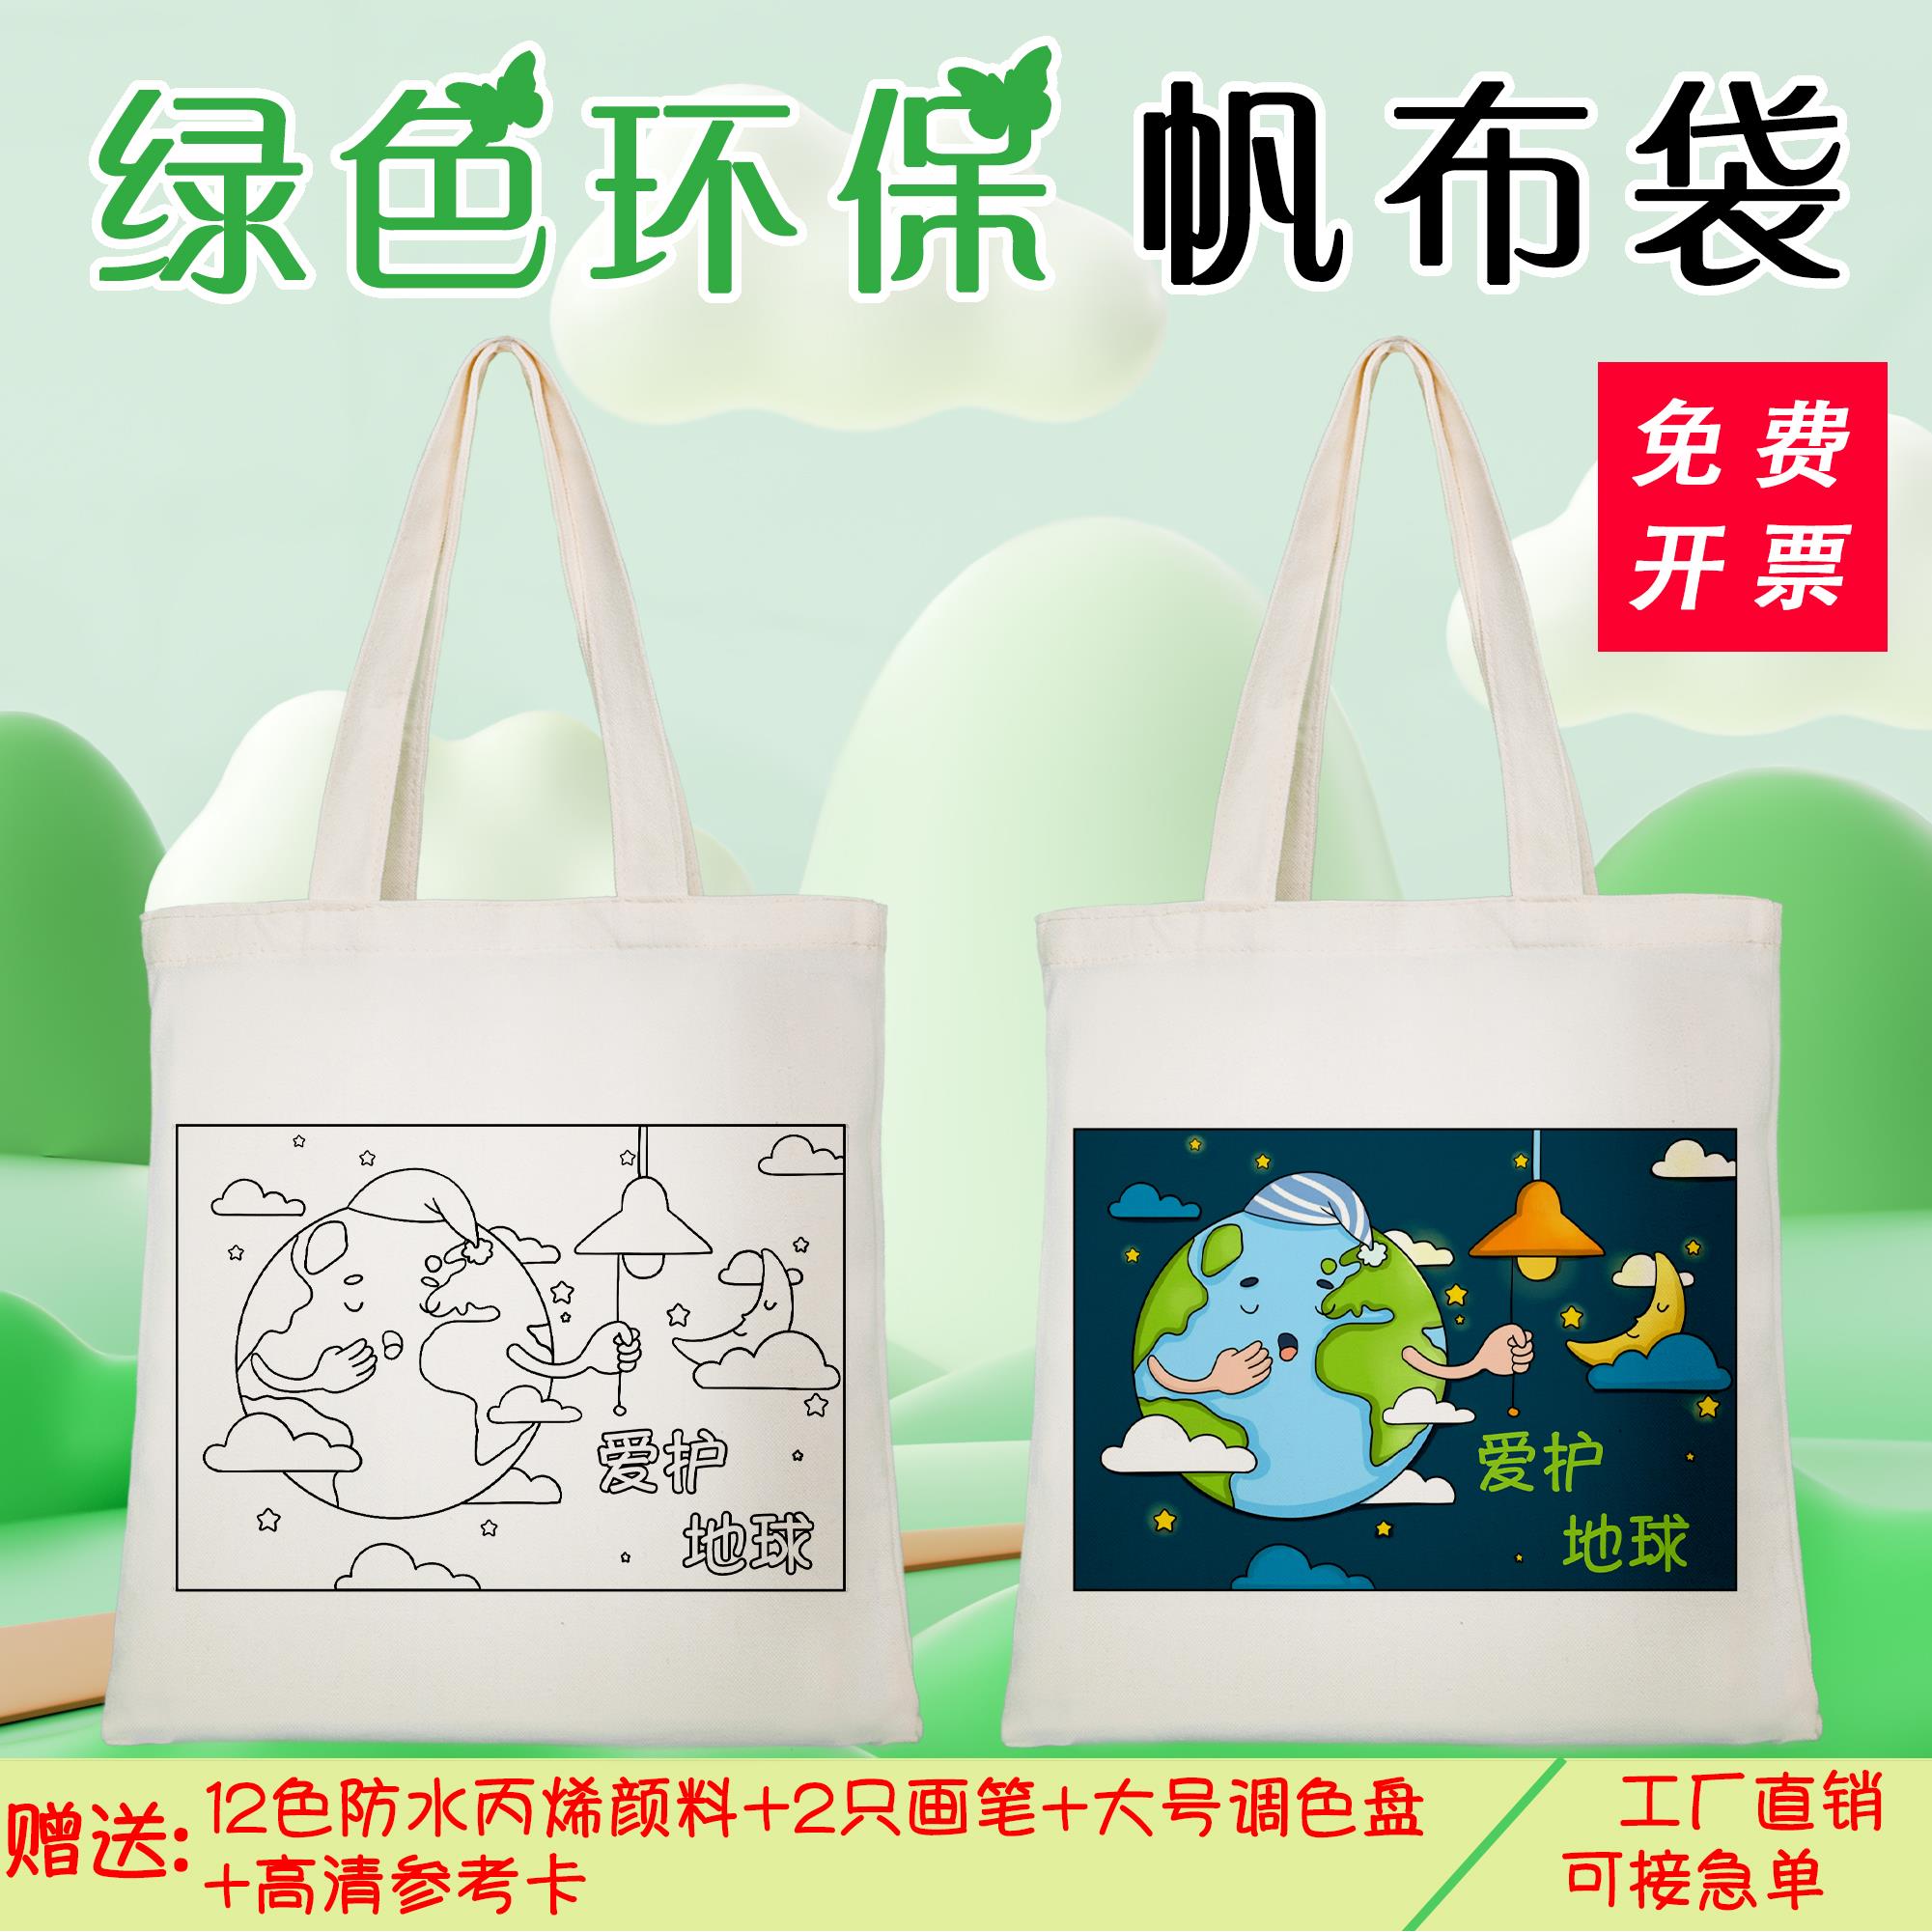 三月三手工作品材料幼儿园小学民族团结一家亲绘画儿童diy涂鸦袋